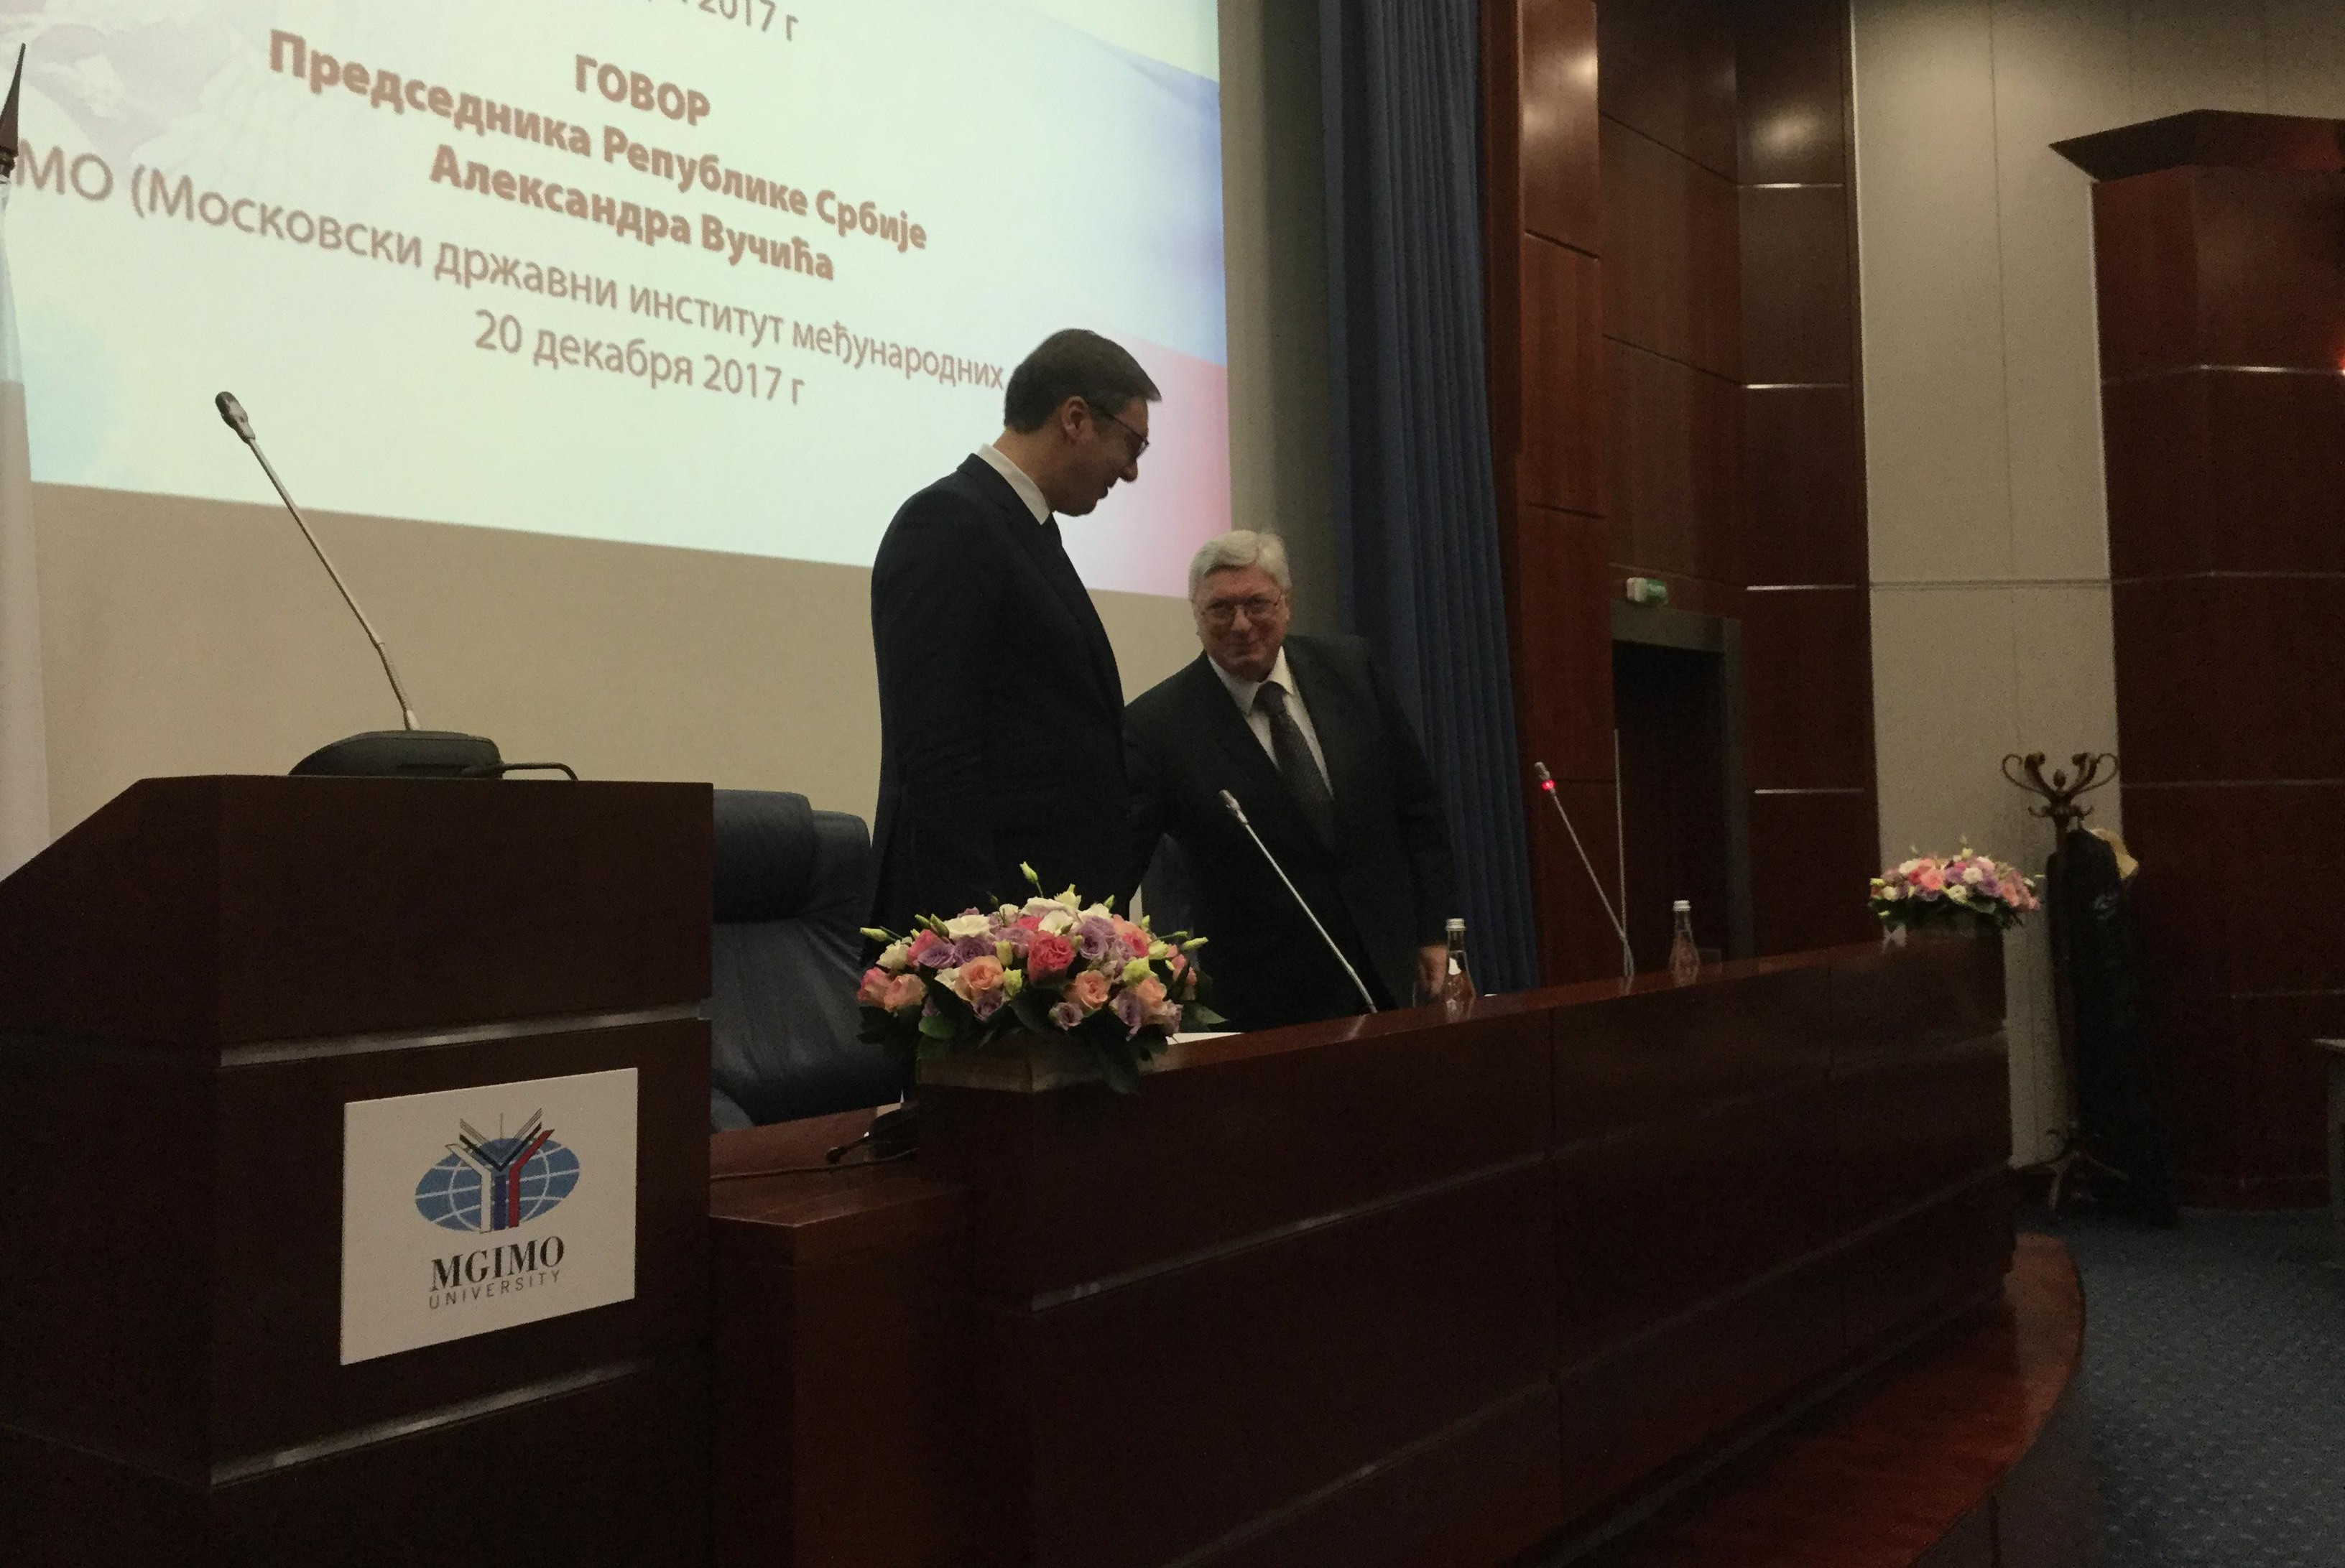 OTKRIVAMO! Predsednik Vučić dobio titulu POČASNOG DOKTORA Moskovskog državnog instituta!